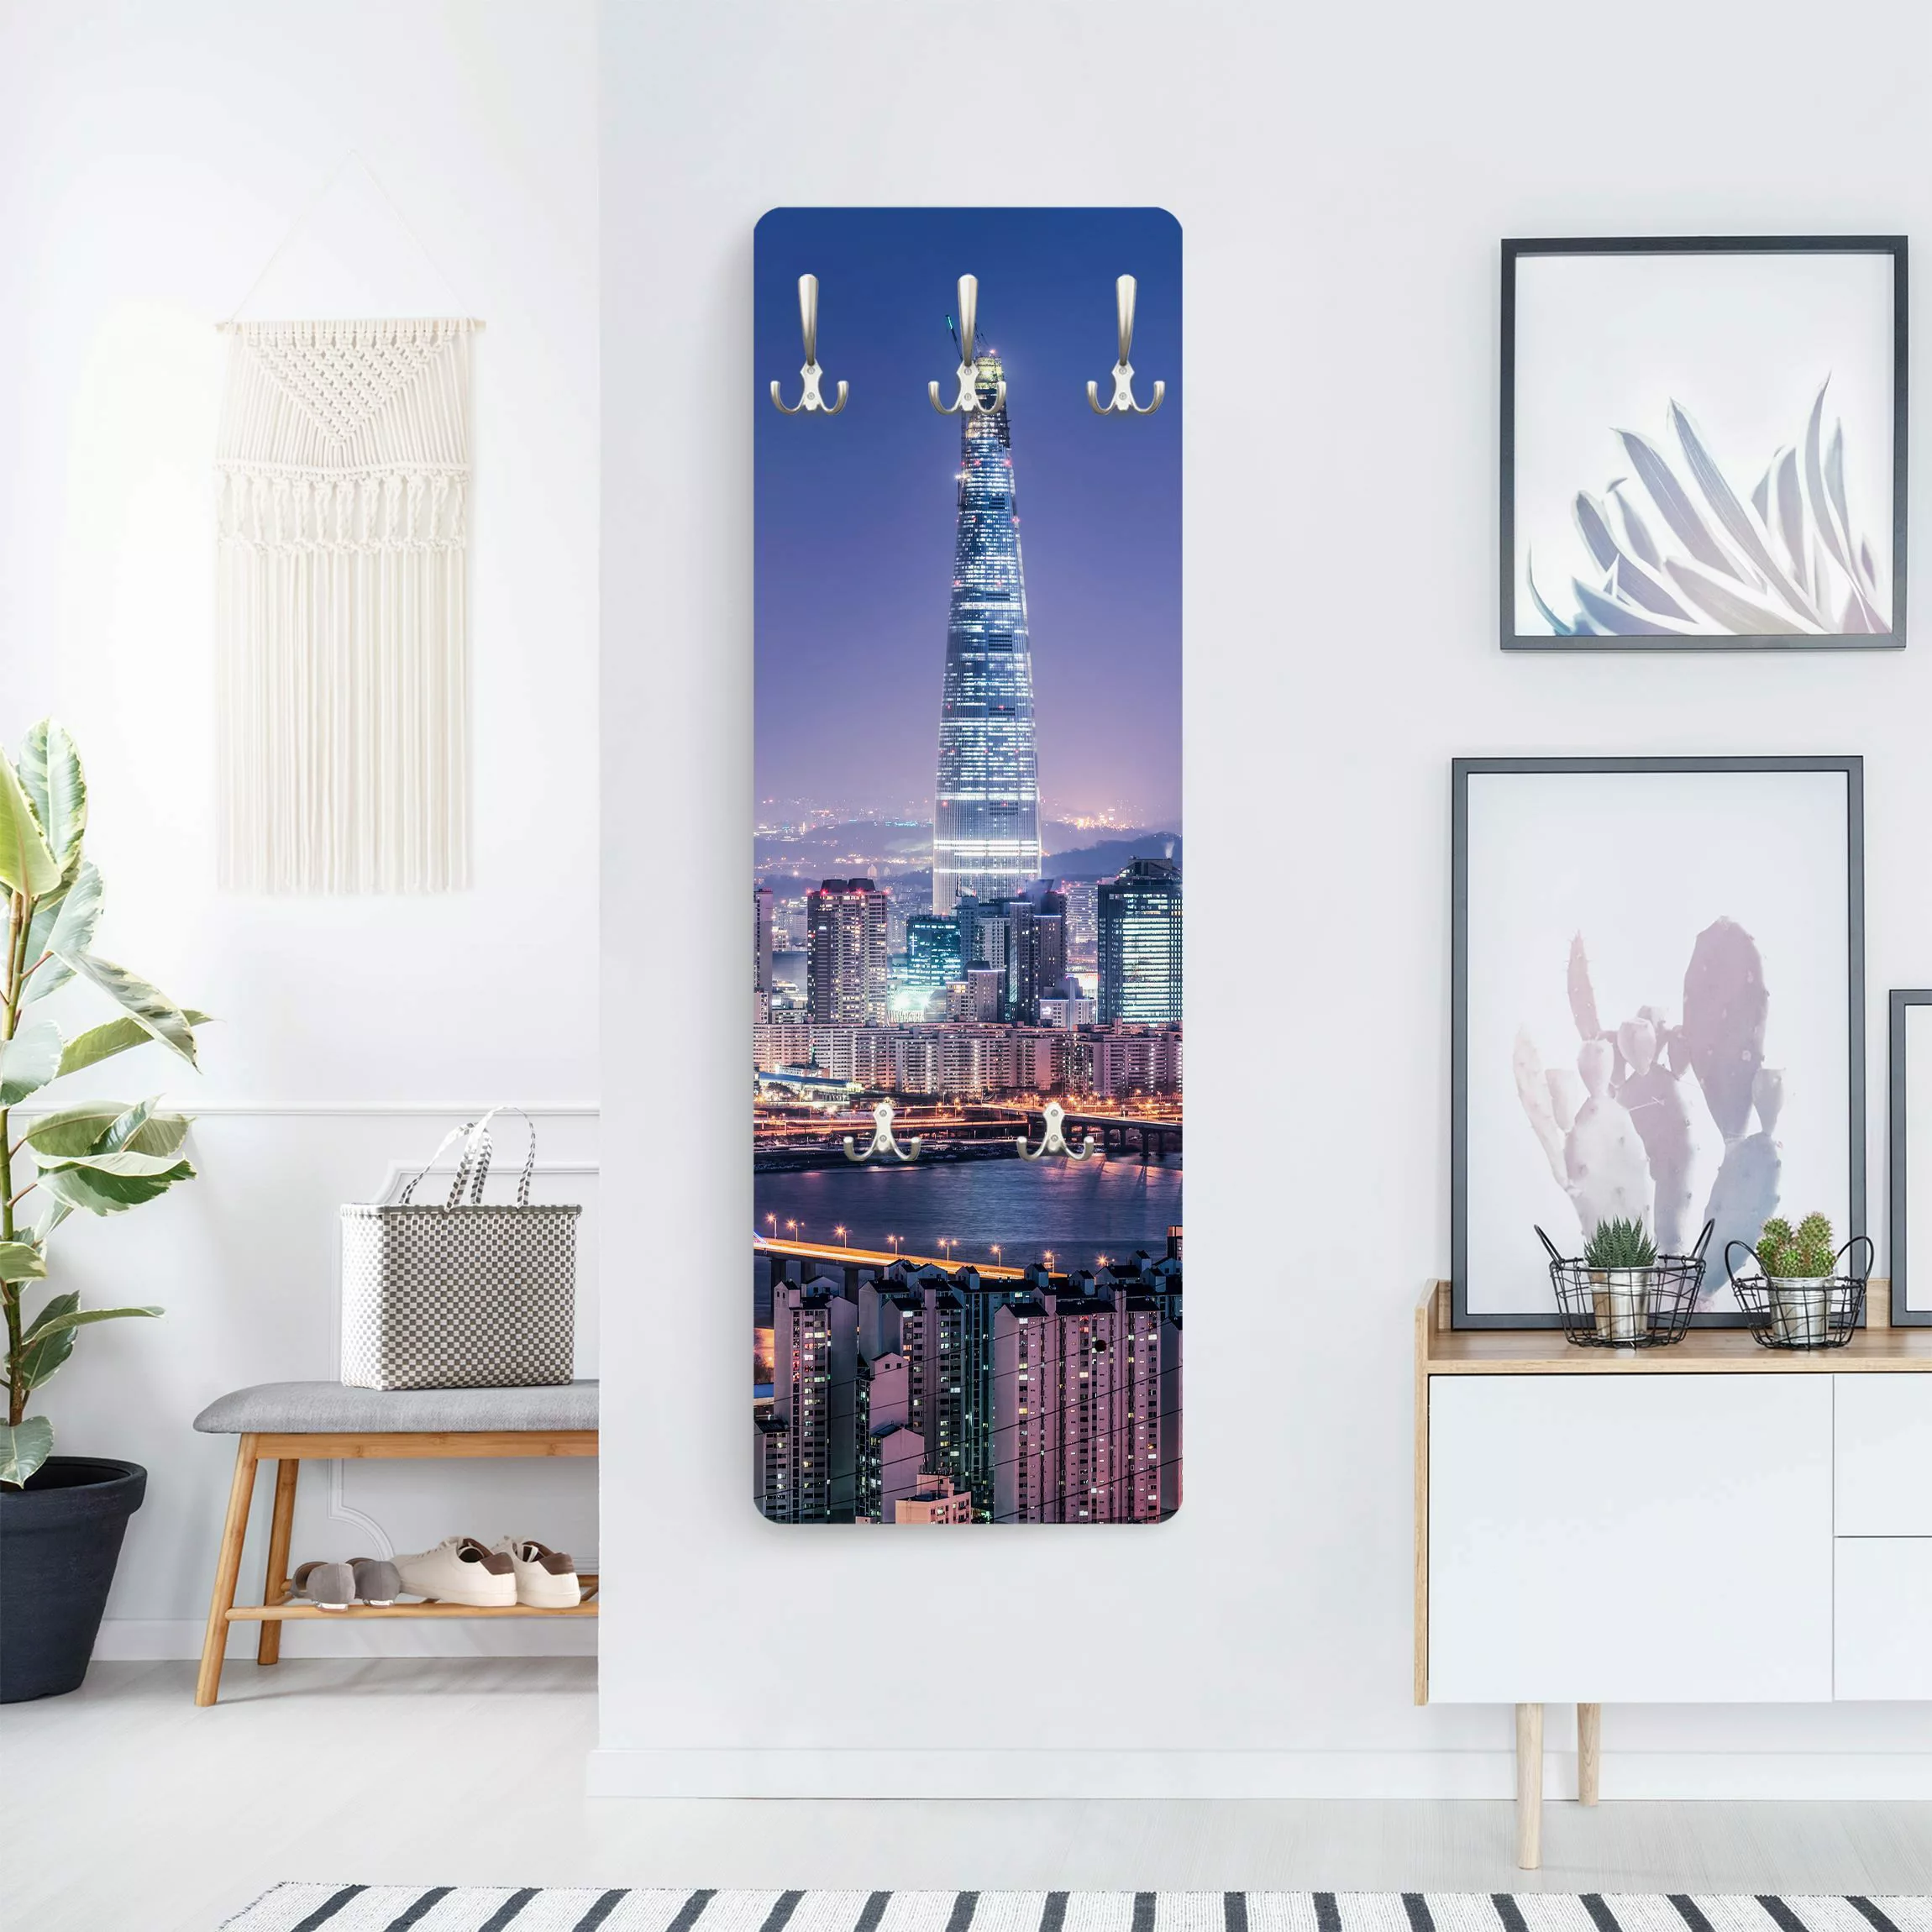 Wandgarderobe Holzpaneel Lotte World Tower bei Nacht günstig online kaufen